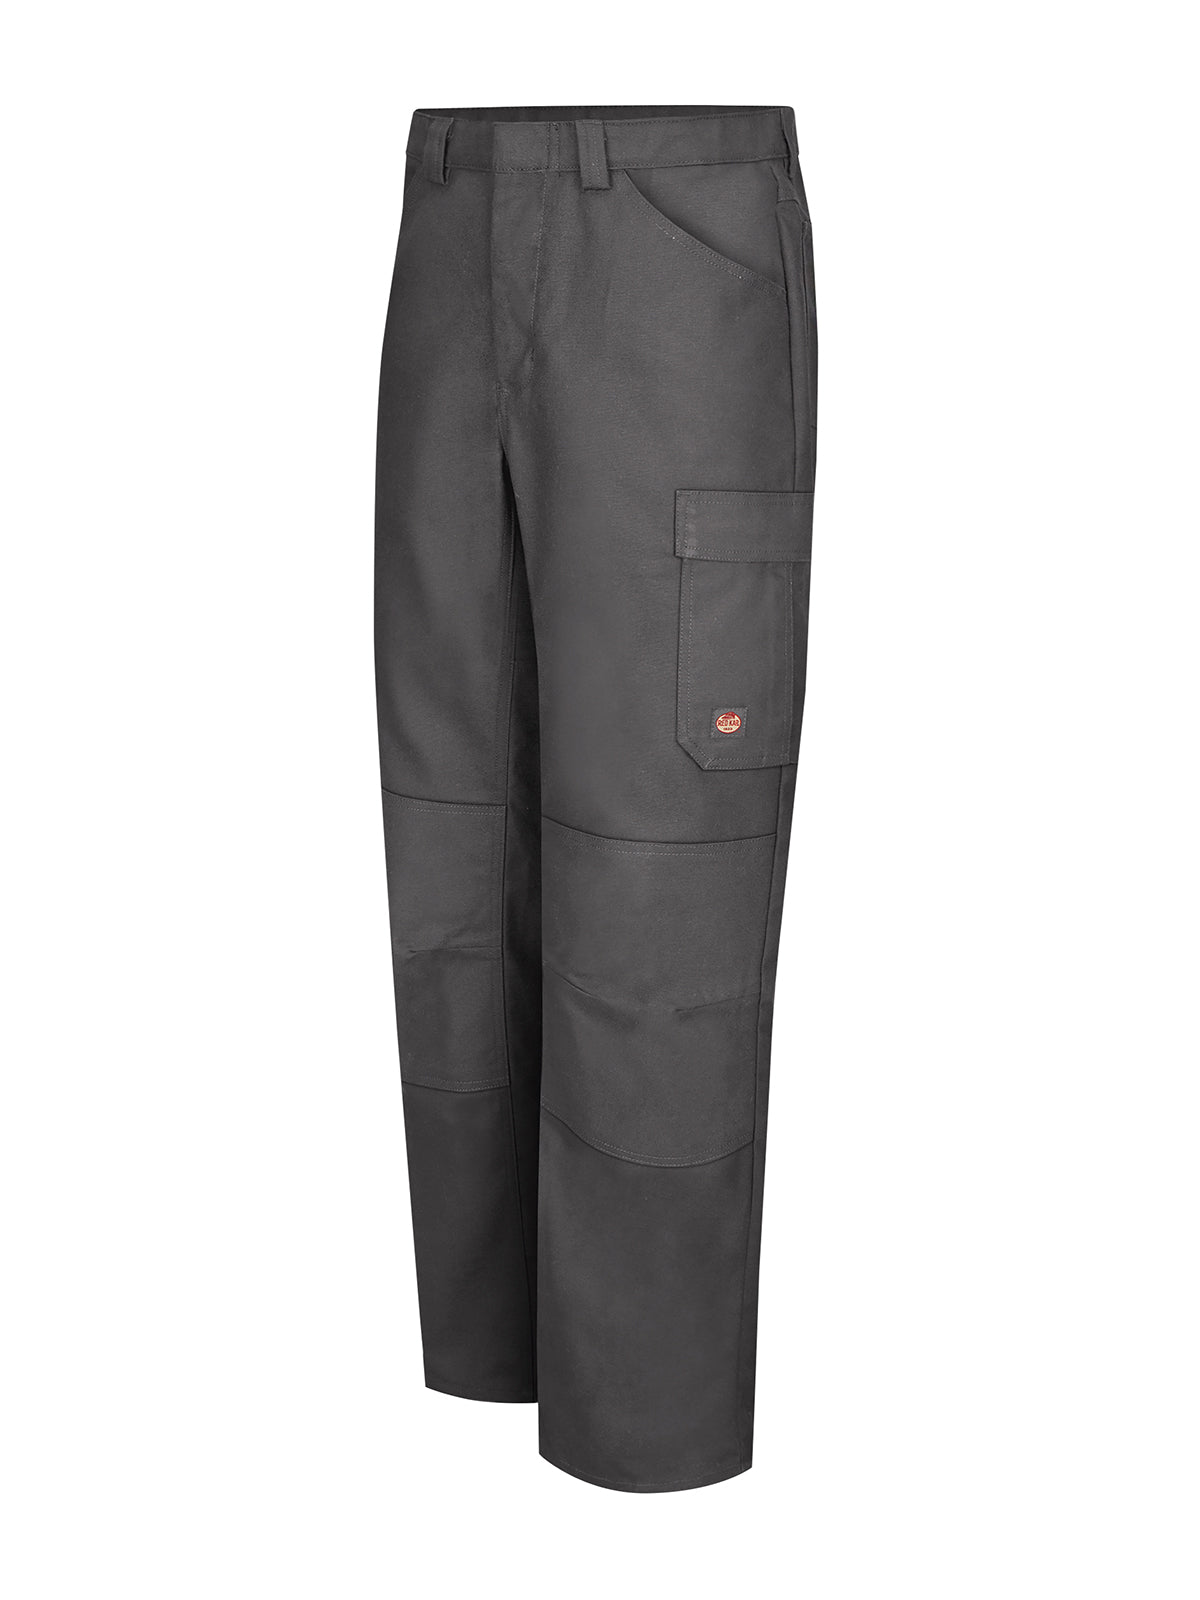 Men's Multi-Pocket Performance Shop Pant - PT2A - Charcoal